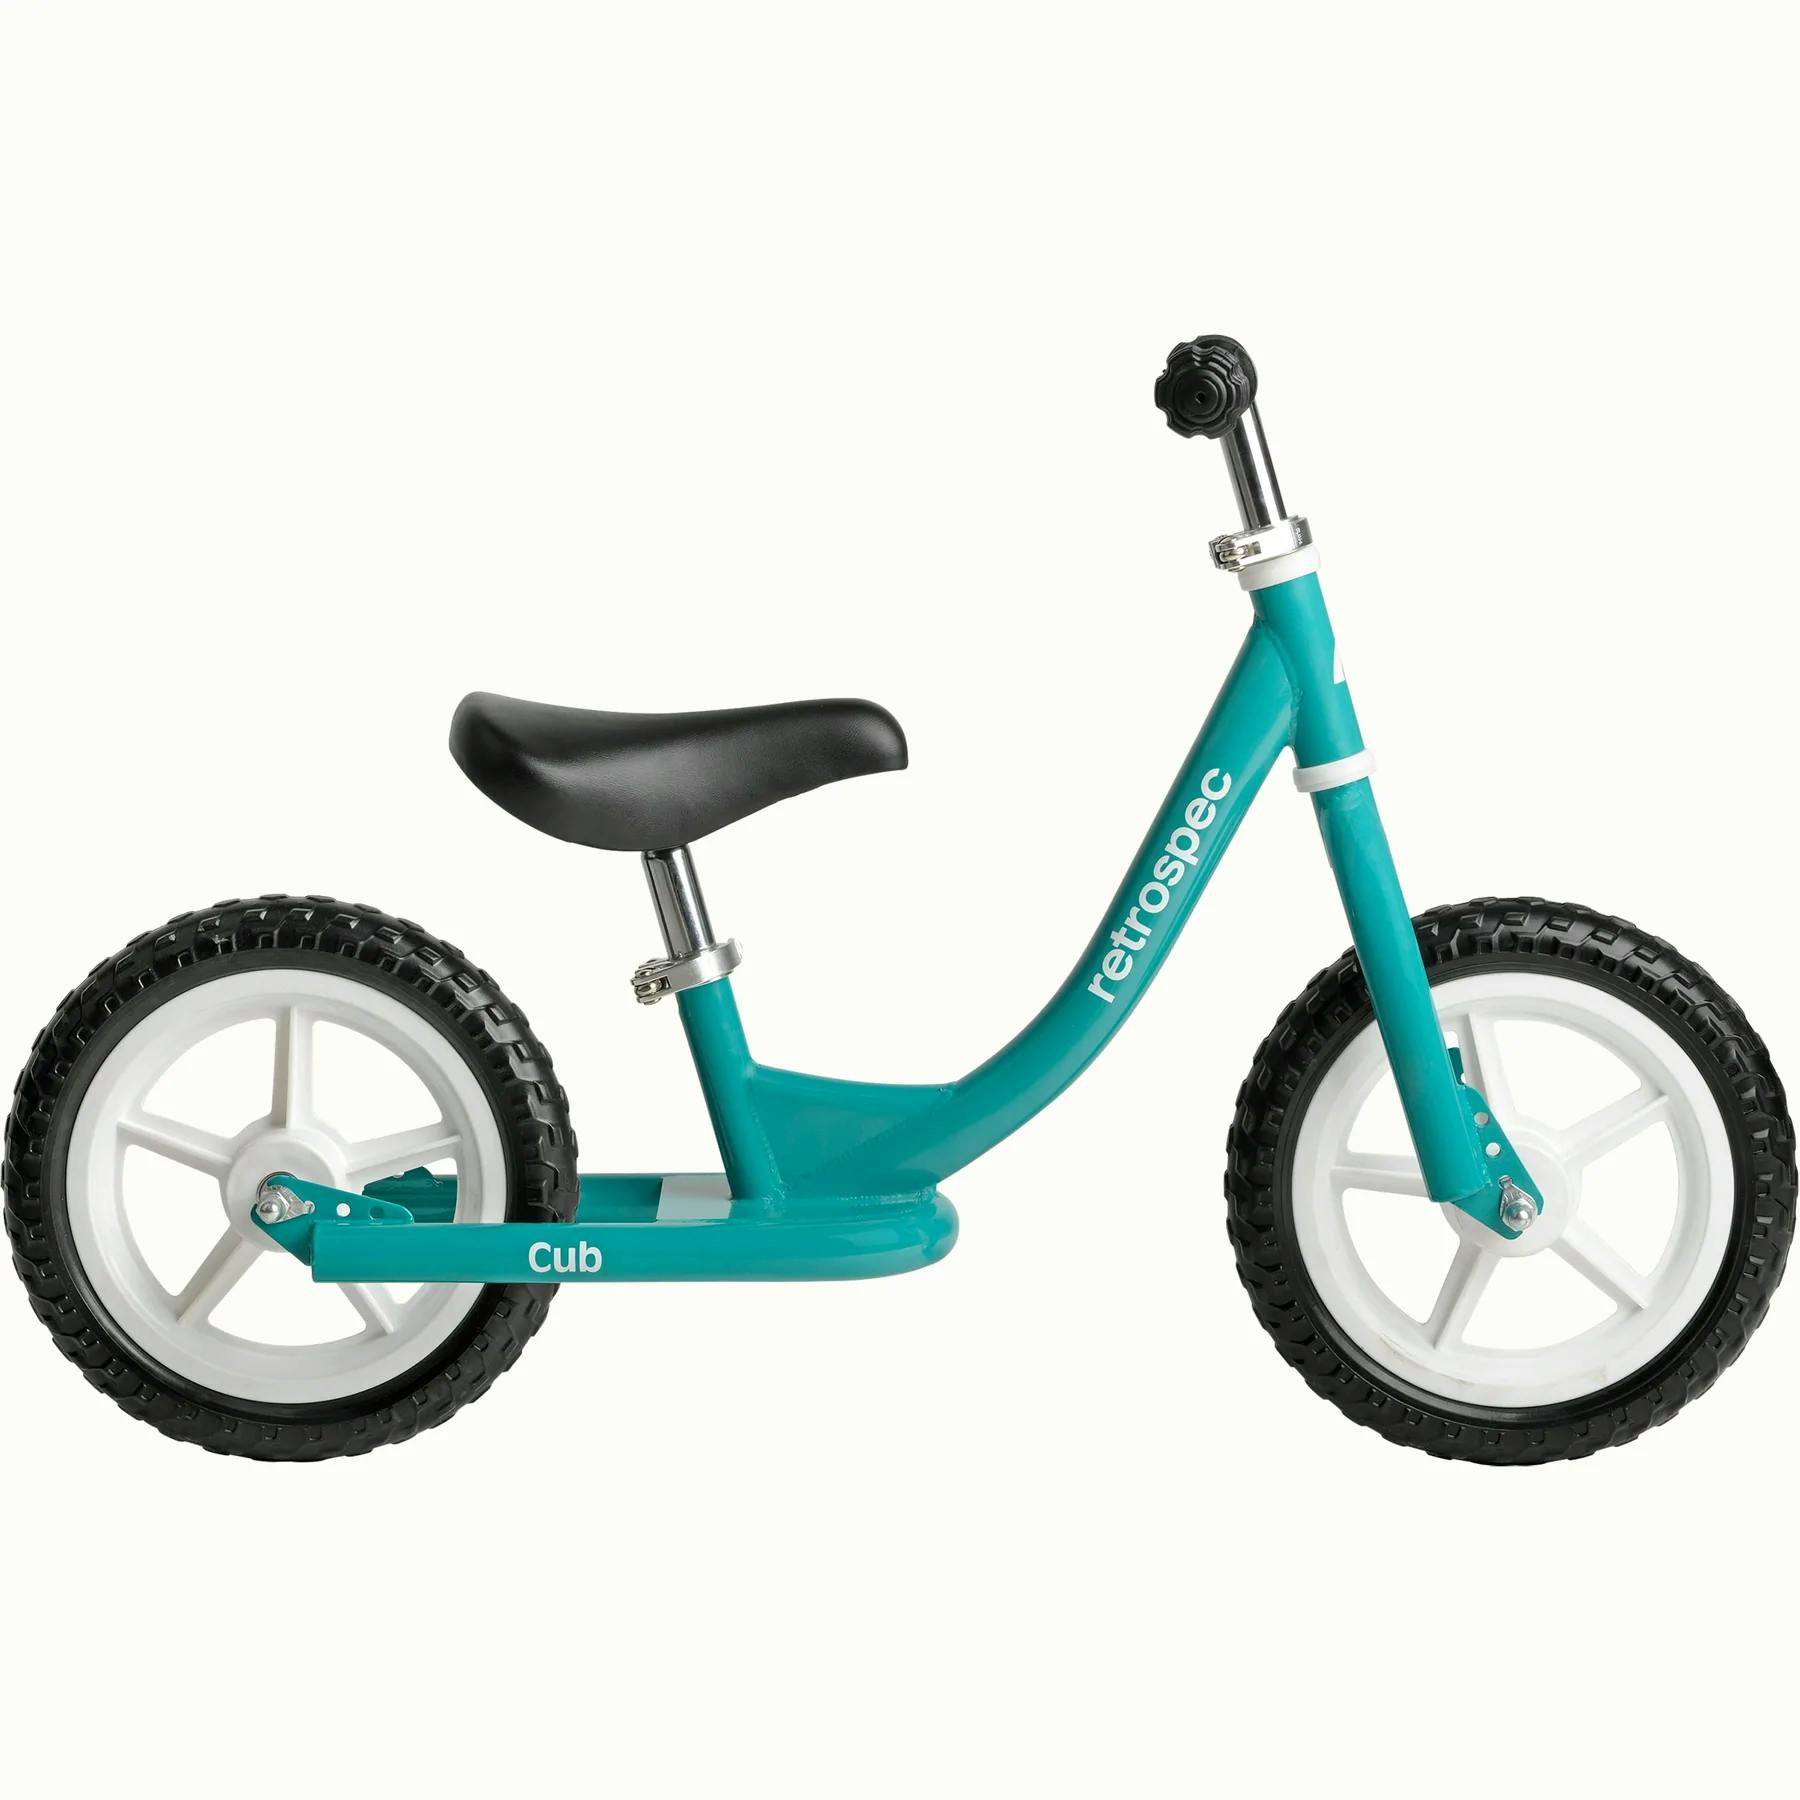 Retrospec Cub Kids Bike · Dragonfly · One size